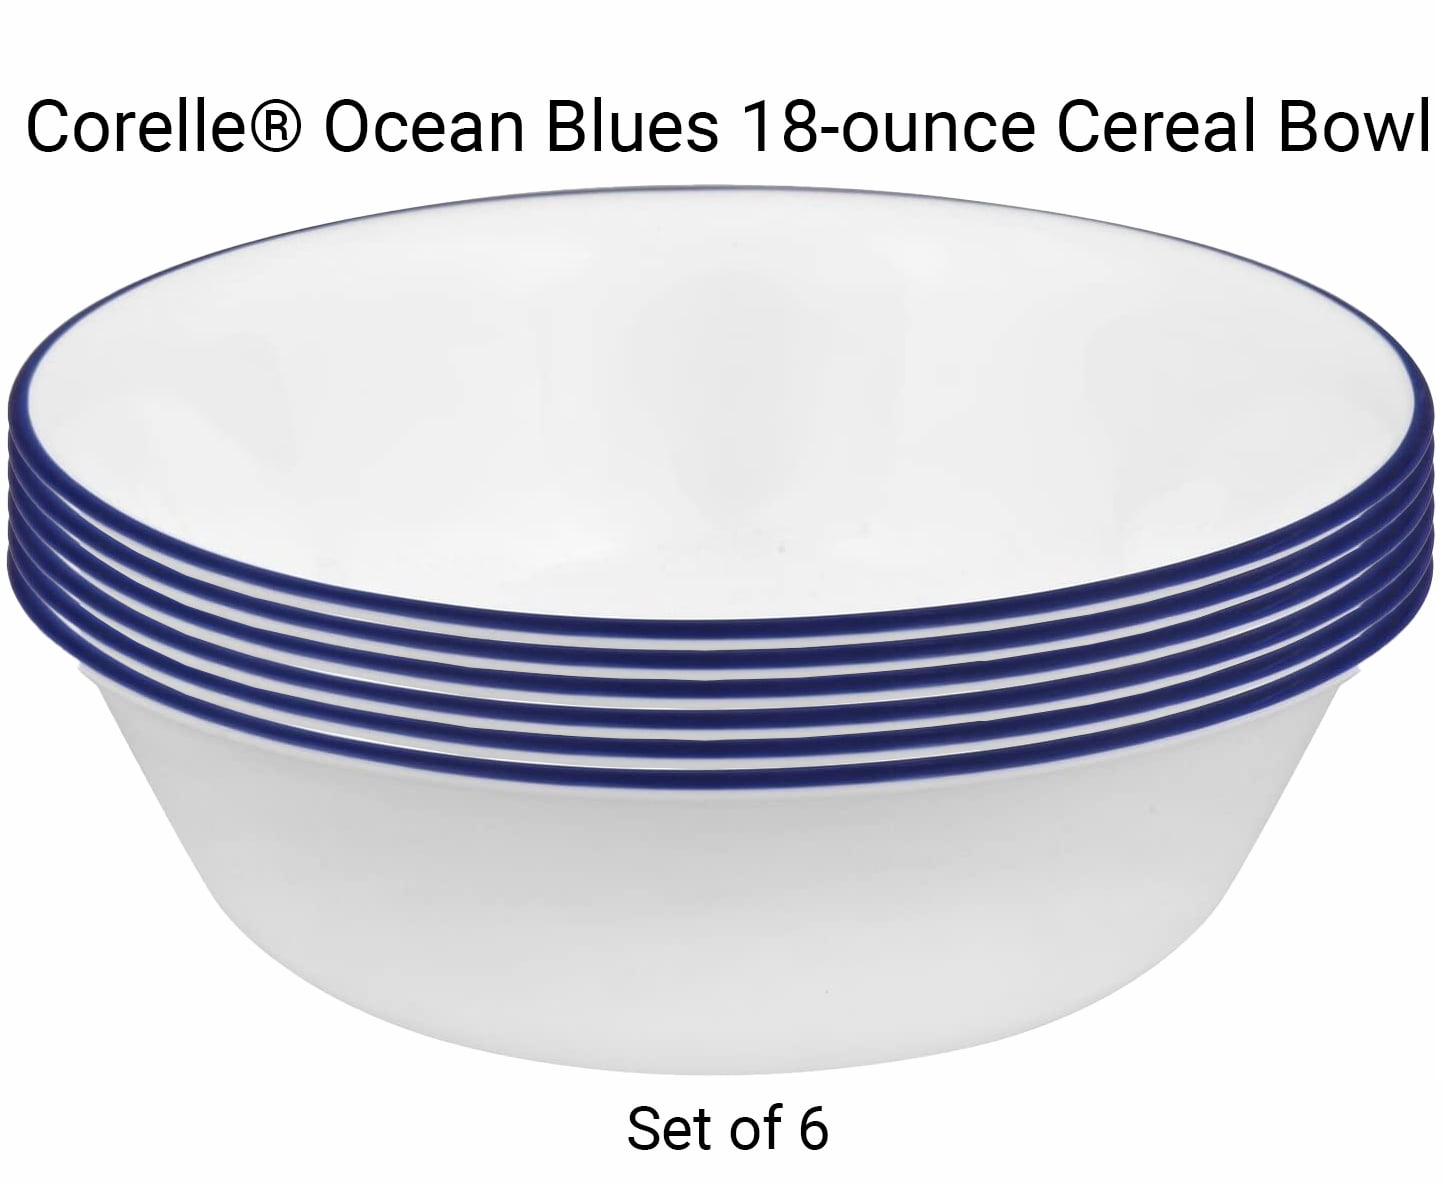 Classic Café Soup Cereal Bowl Set of 6 Corelle Livingware 18 oz 